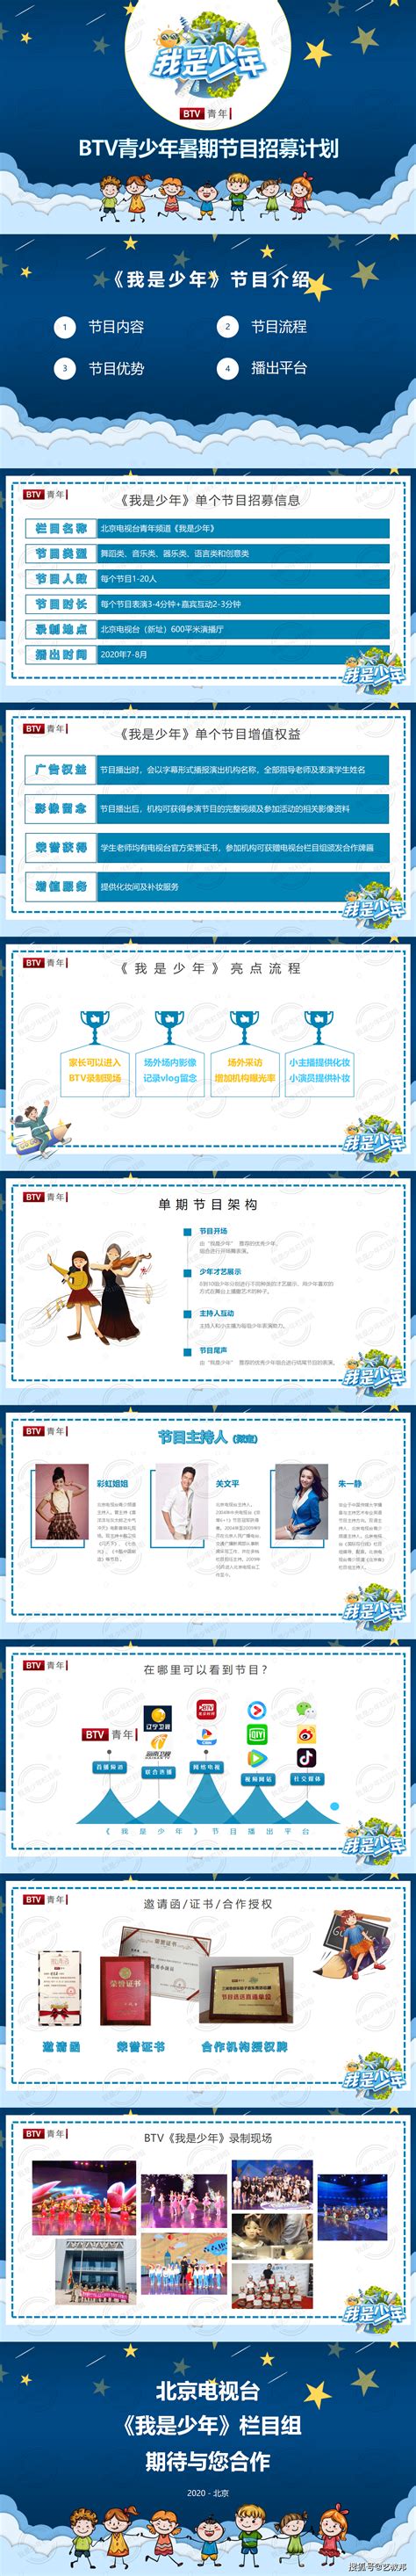 “新时代少年说”2020BTV青少年传媒语言艺术盛典在北京举行 - 中国第一时间